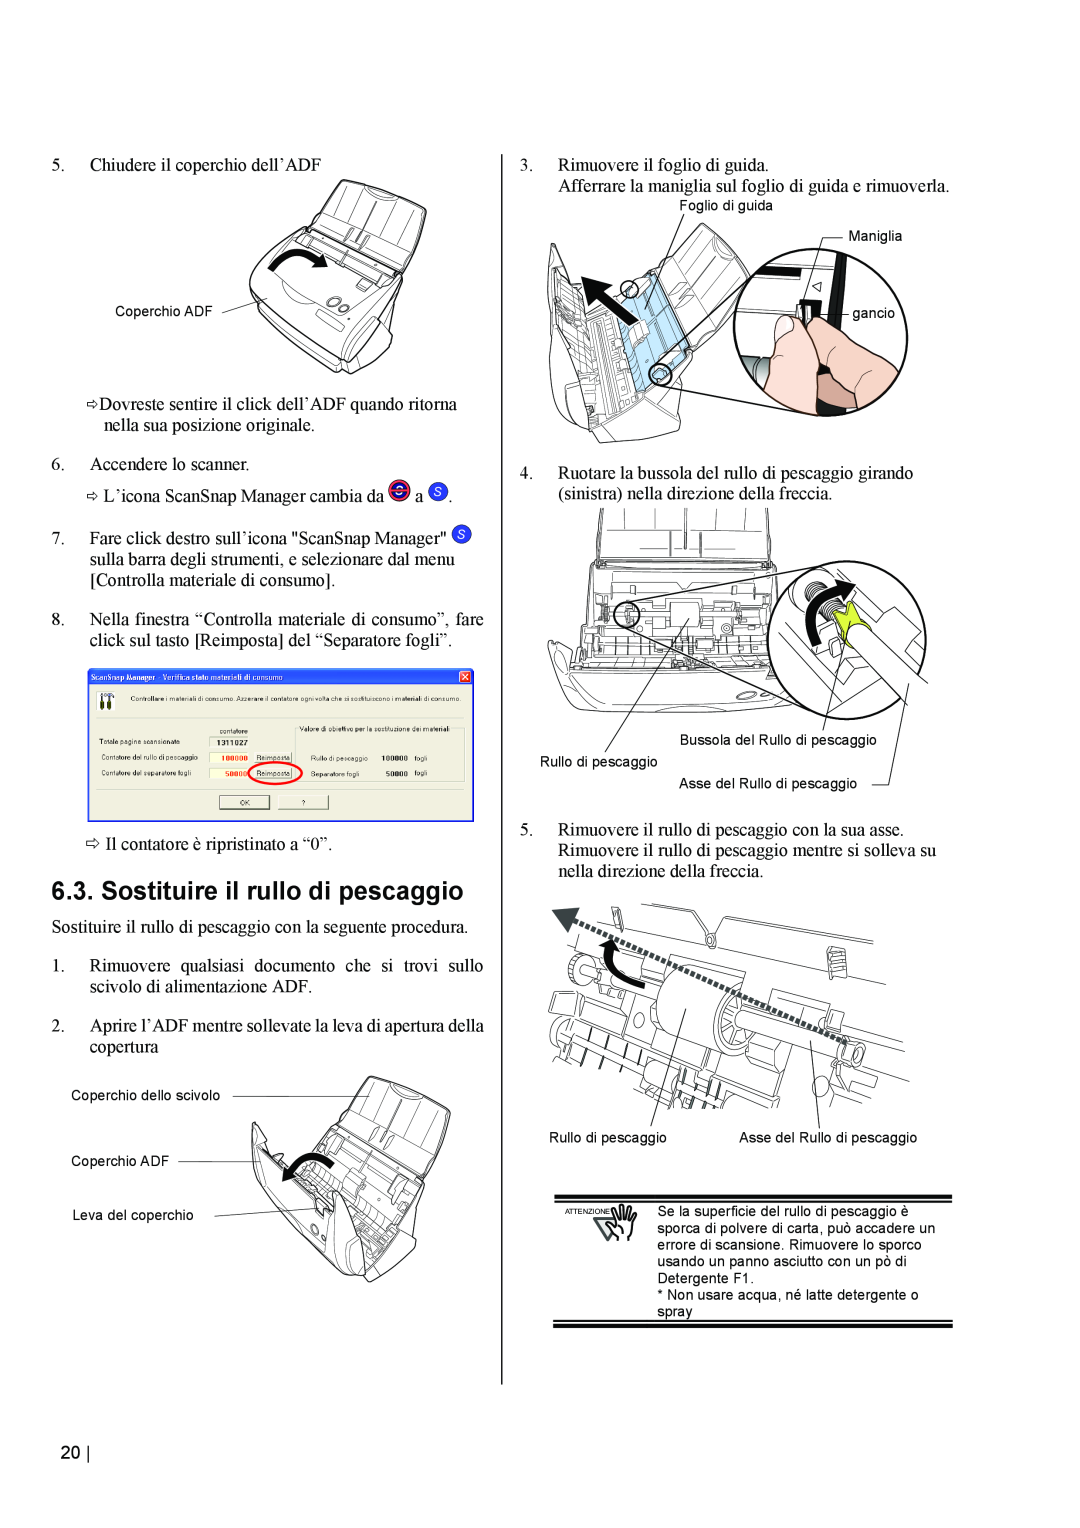 Fujitsu fi-5110EOX2 manual Sostituire il rullo di pescaggio, sporca di polvere di carta, può accadere un 